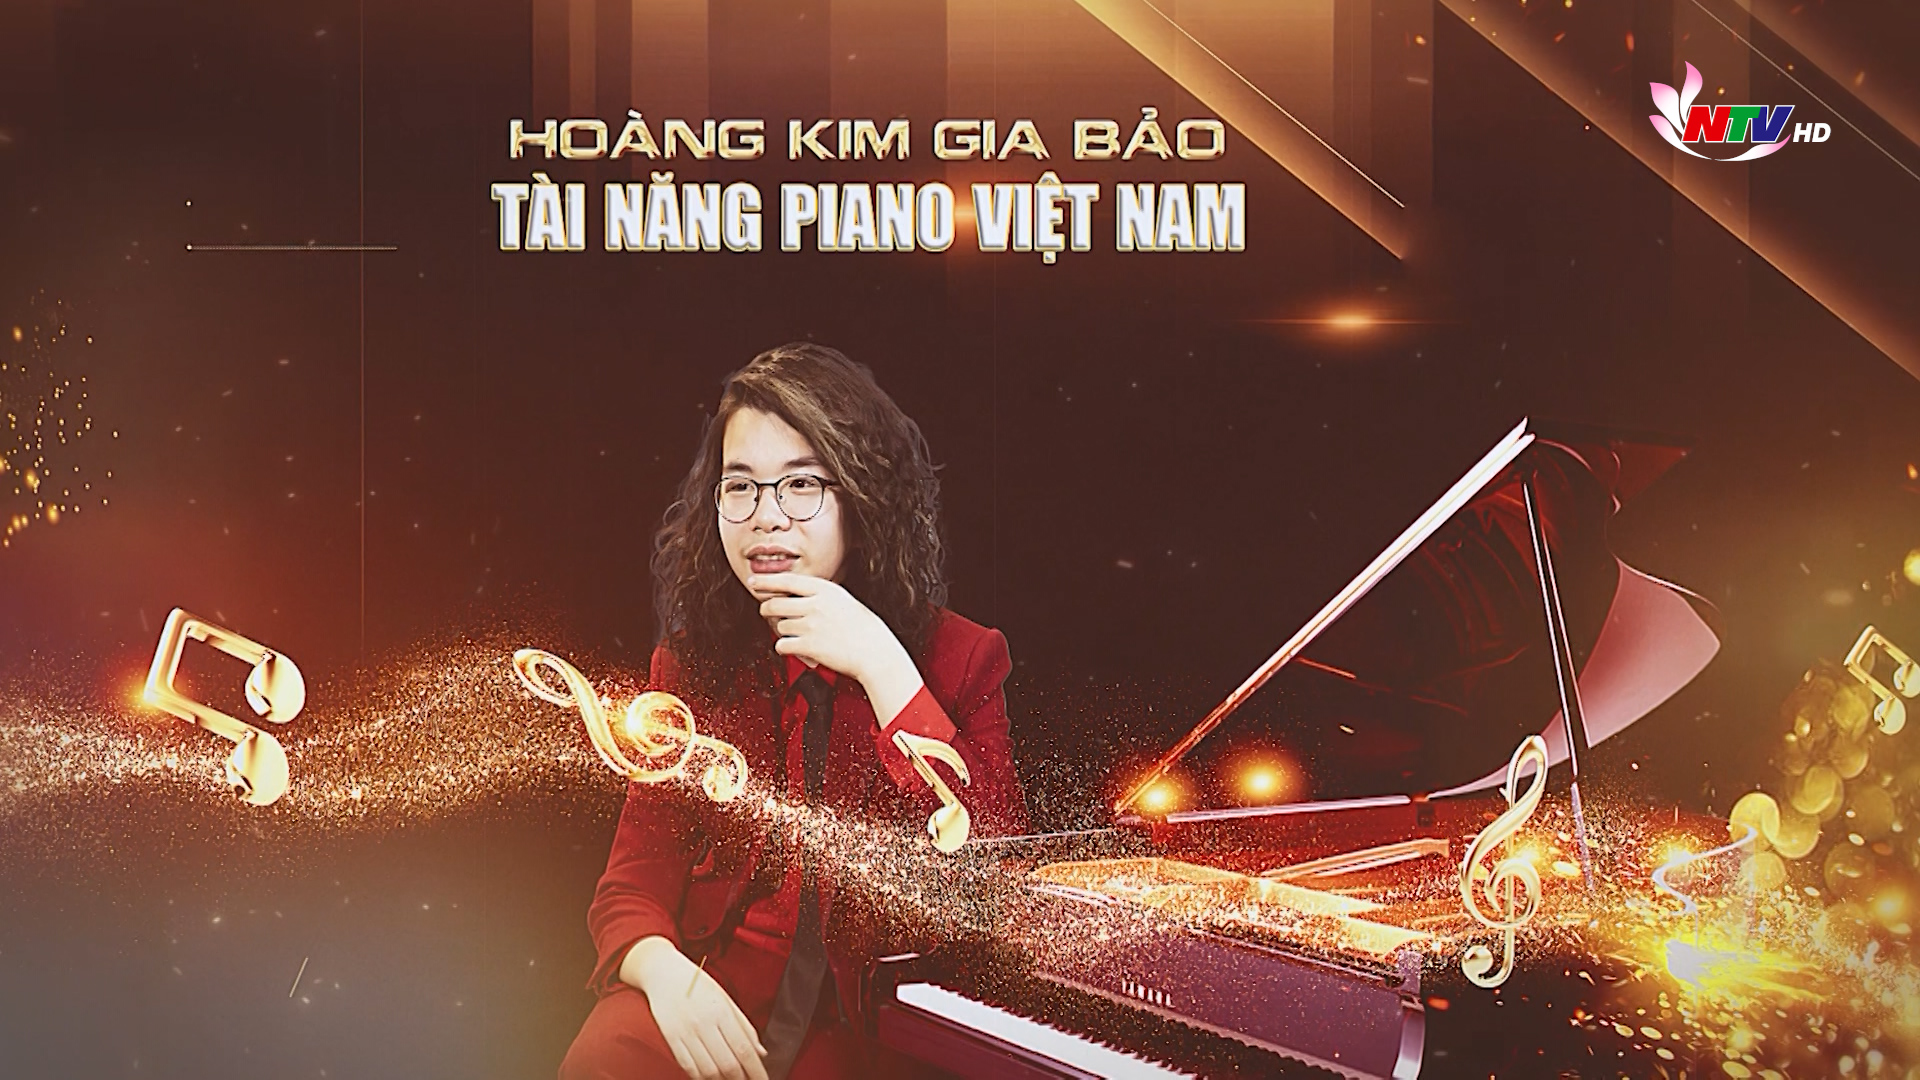 Trò chuyện cuối tuần: Hoàng Kim Gia Bảo – Tài năng piano Việt Nam